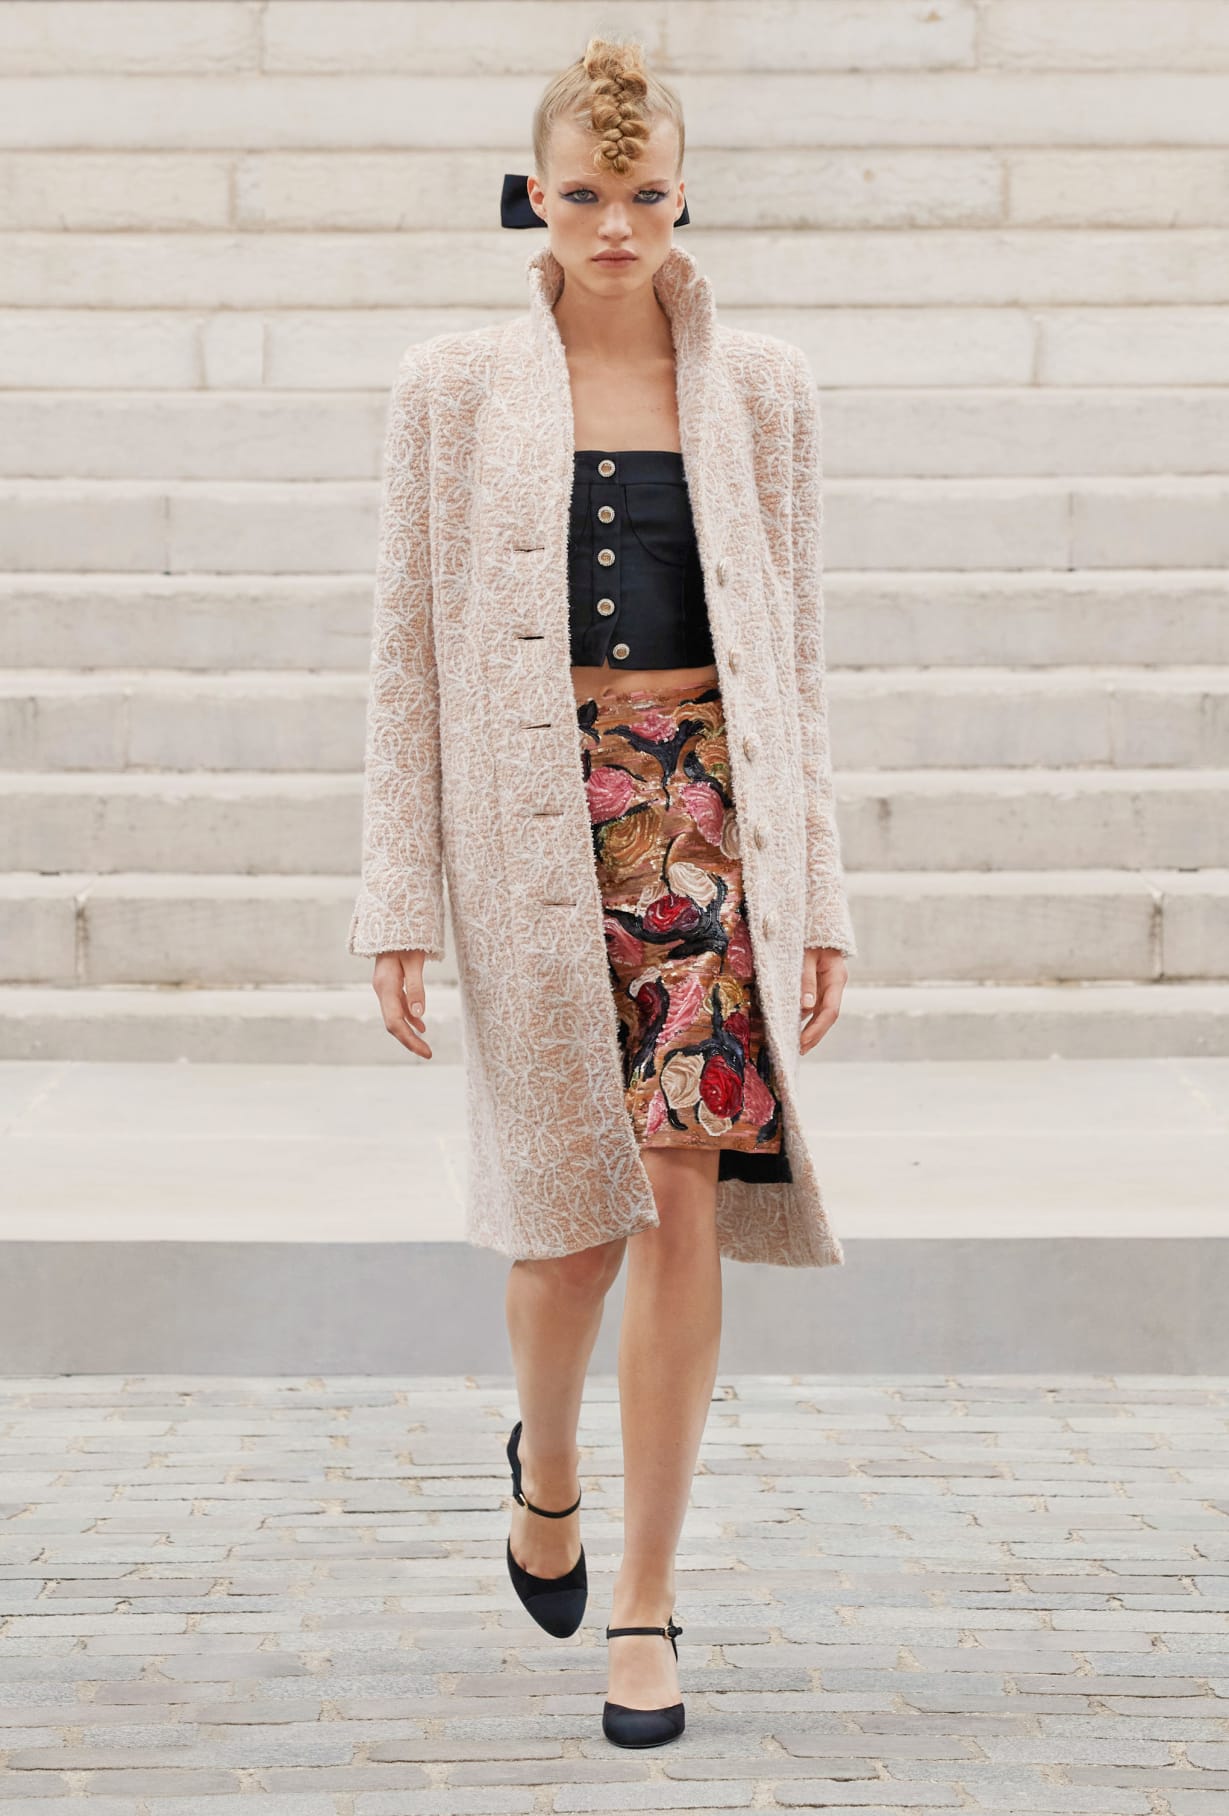 Chanel Haute Couture 2021: Sự tối giản của sàn diễn để tôn vinh trang phục  - Ảnh 8